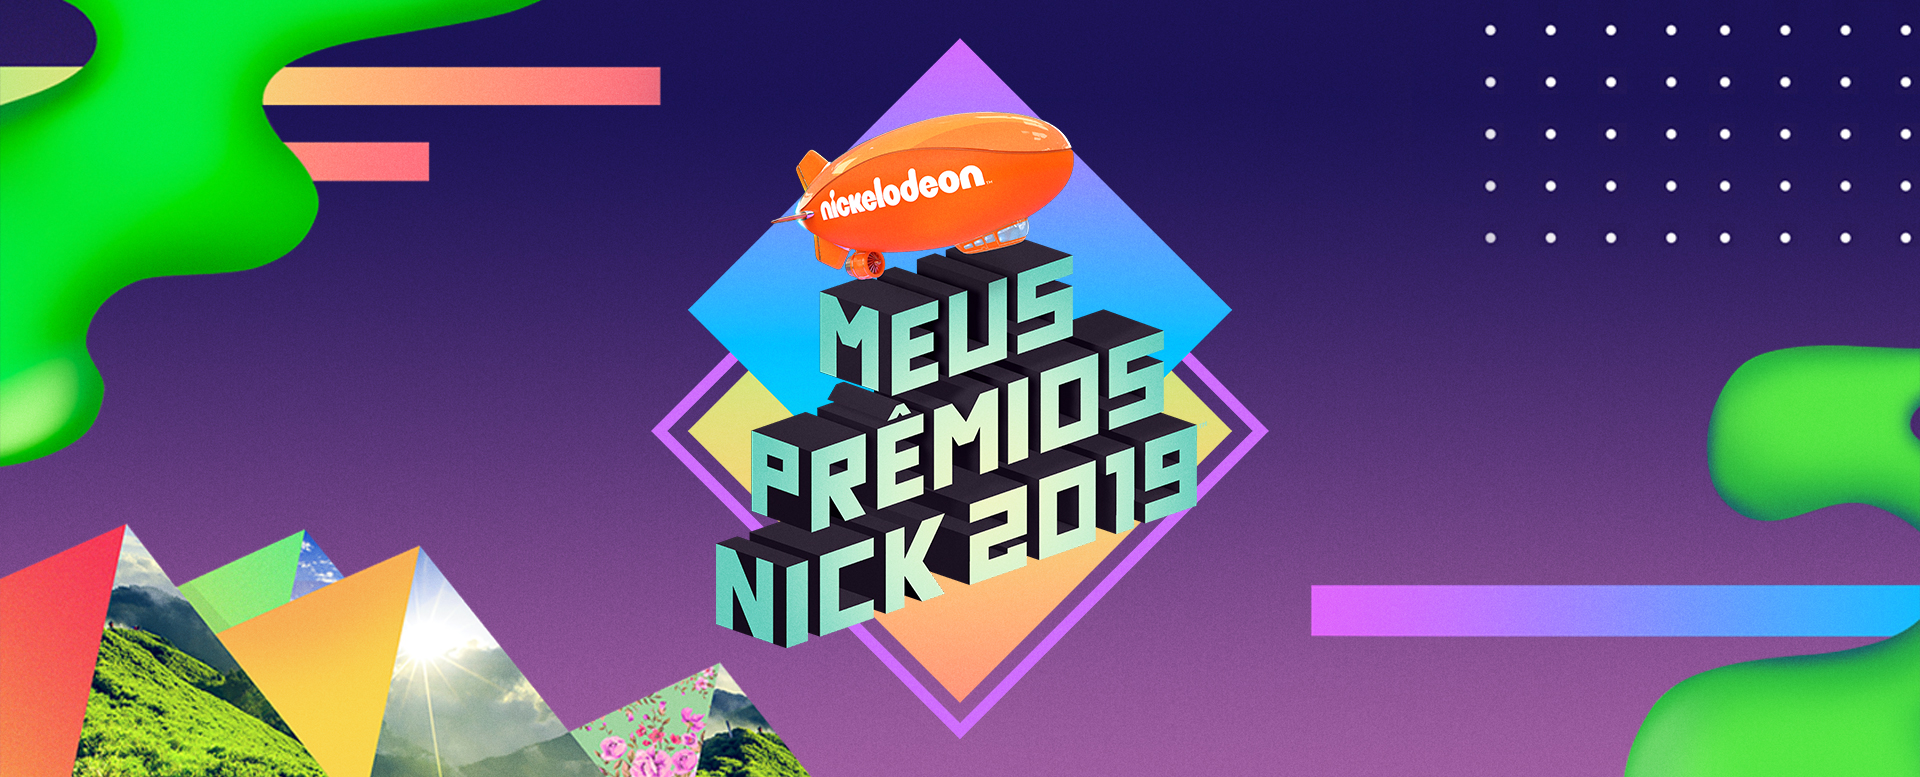 Meus Prêmios Nick: Nickelodeon divulga categorias e indicados da